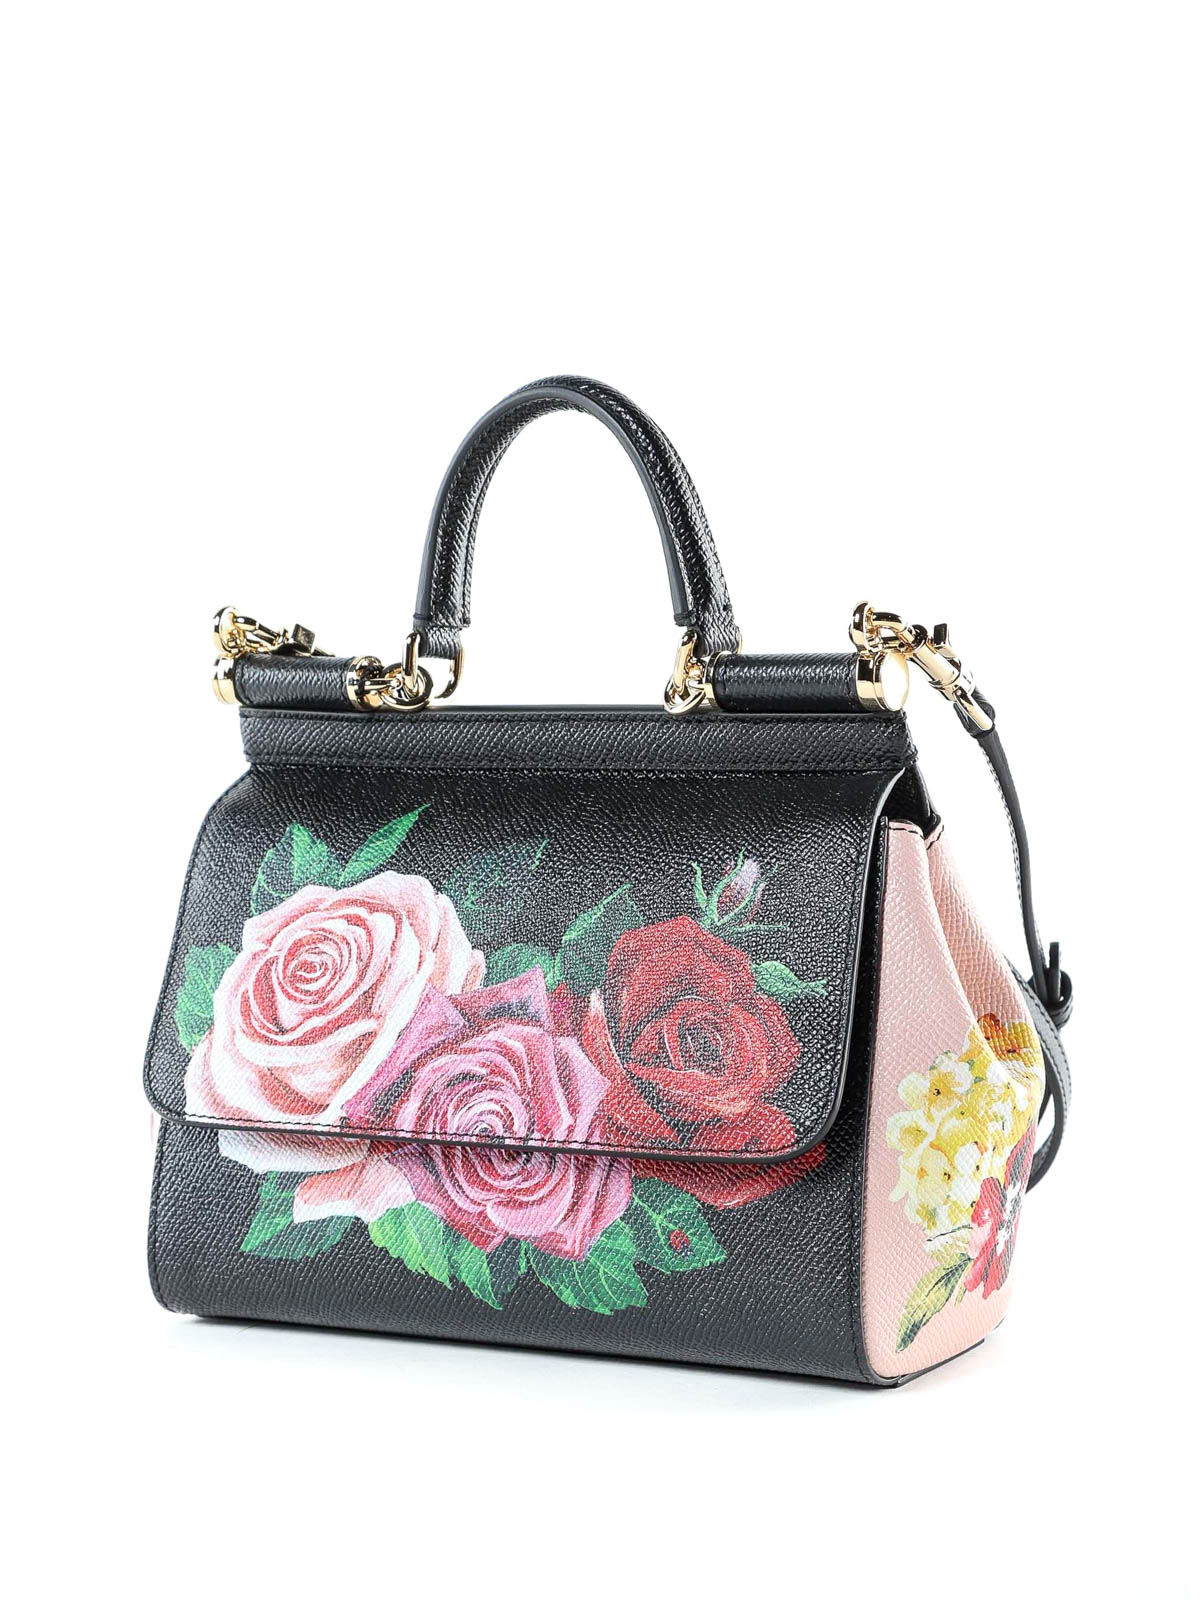 Top 45+ imagen dolce and gabbana sicily floral bag